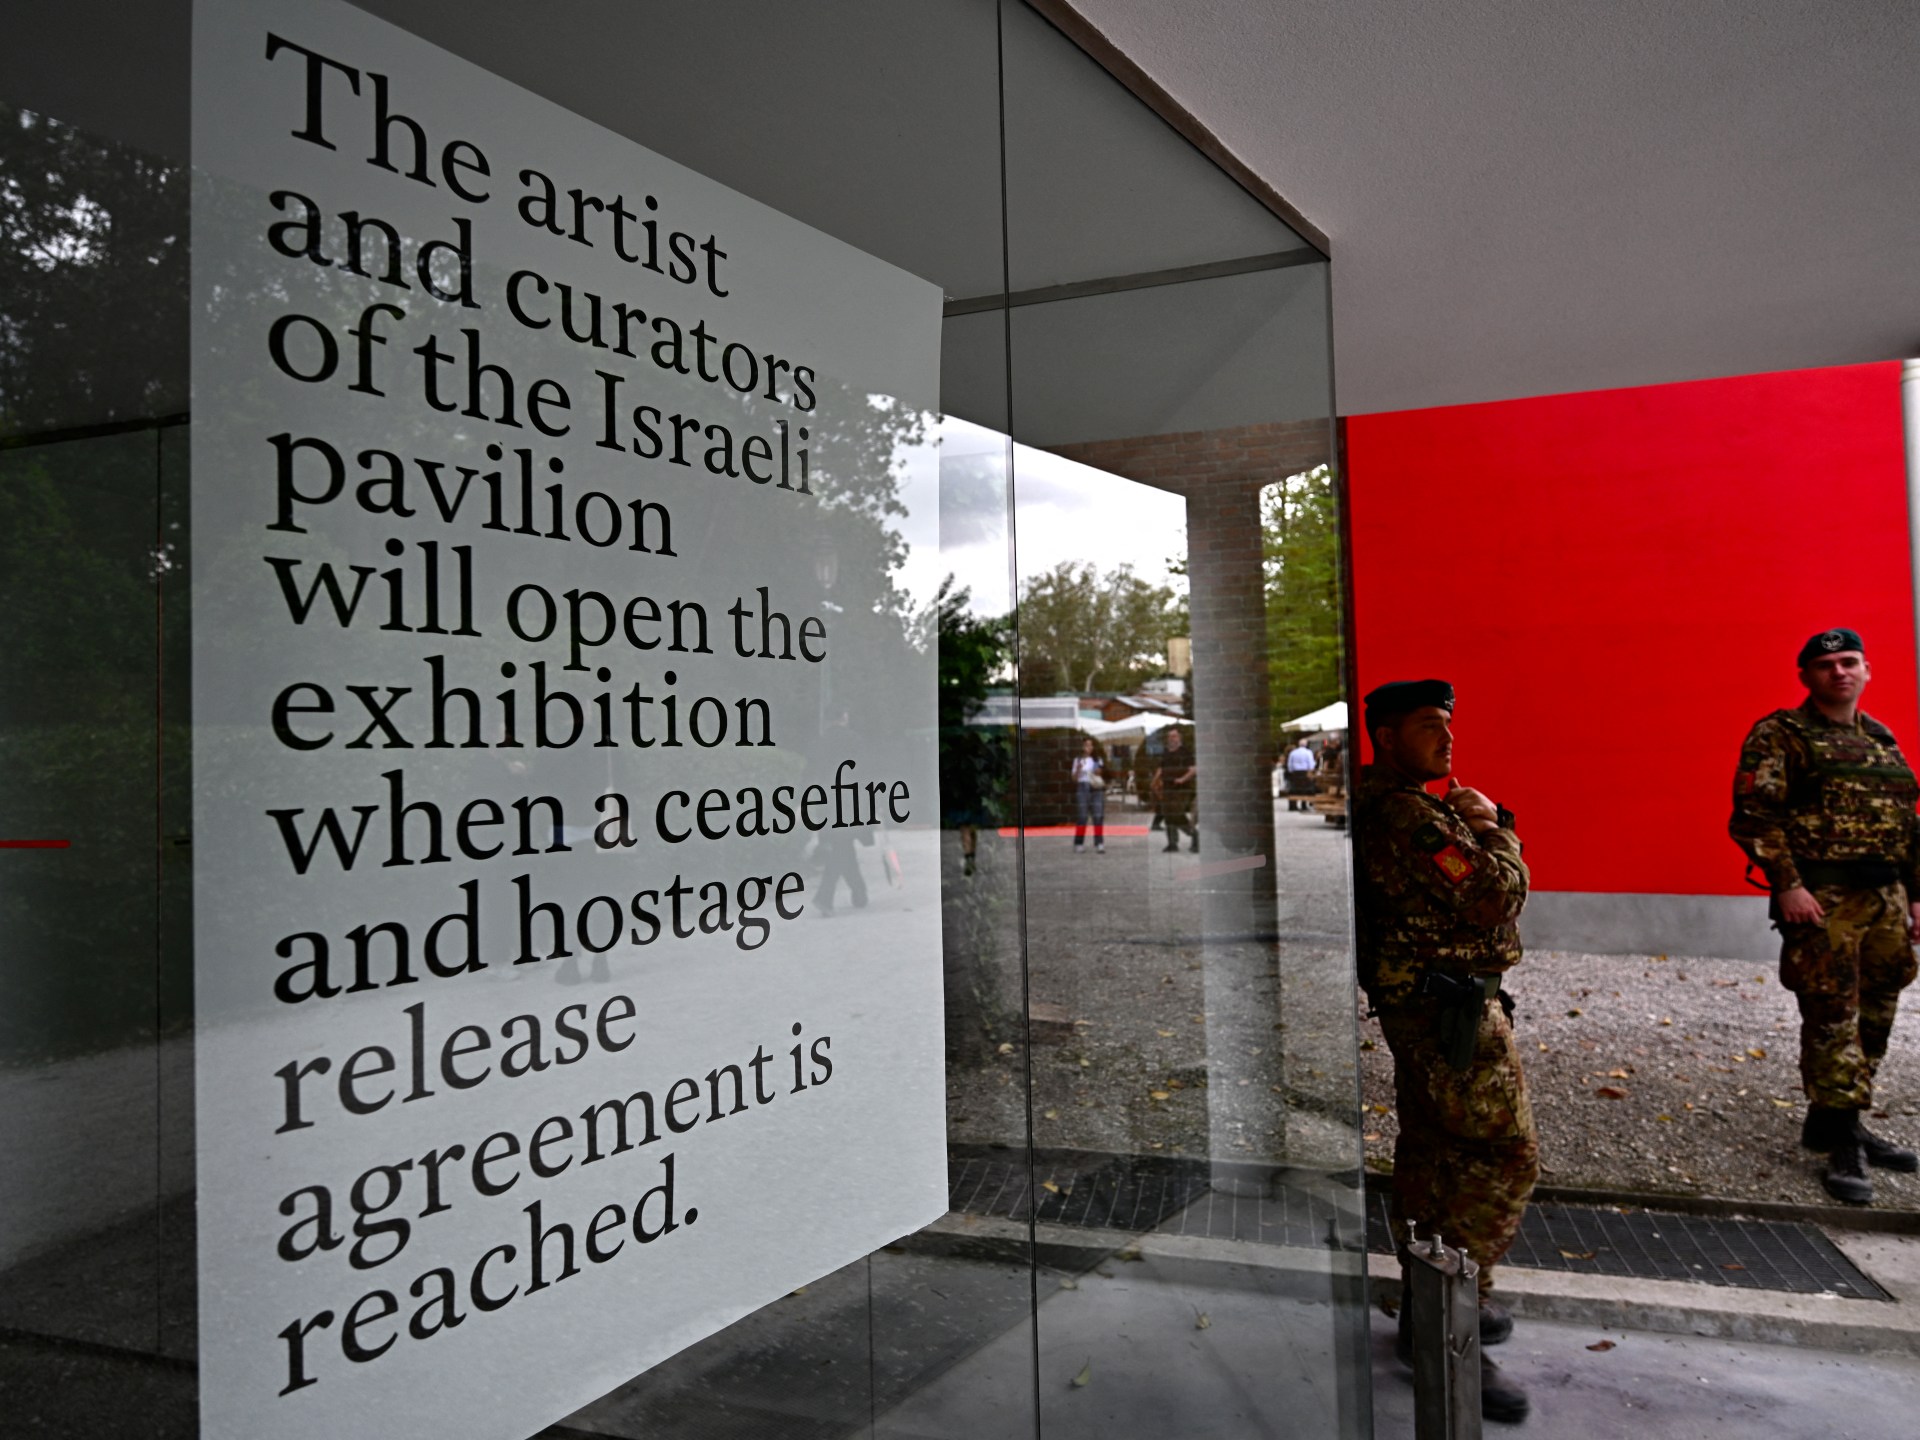 Un artiste israélien affirme que le pavillon de la Biennale de Venise n'ouvrira pas avant le cessez-le-feu à Gaza |  Guerre d'Israël contre Gaza Actualités